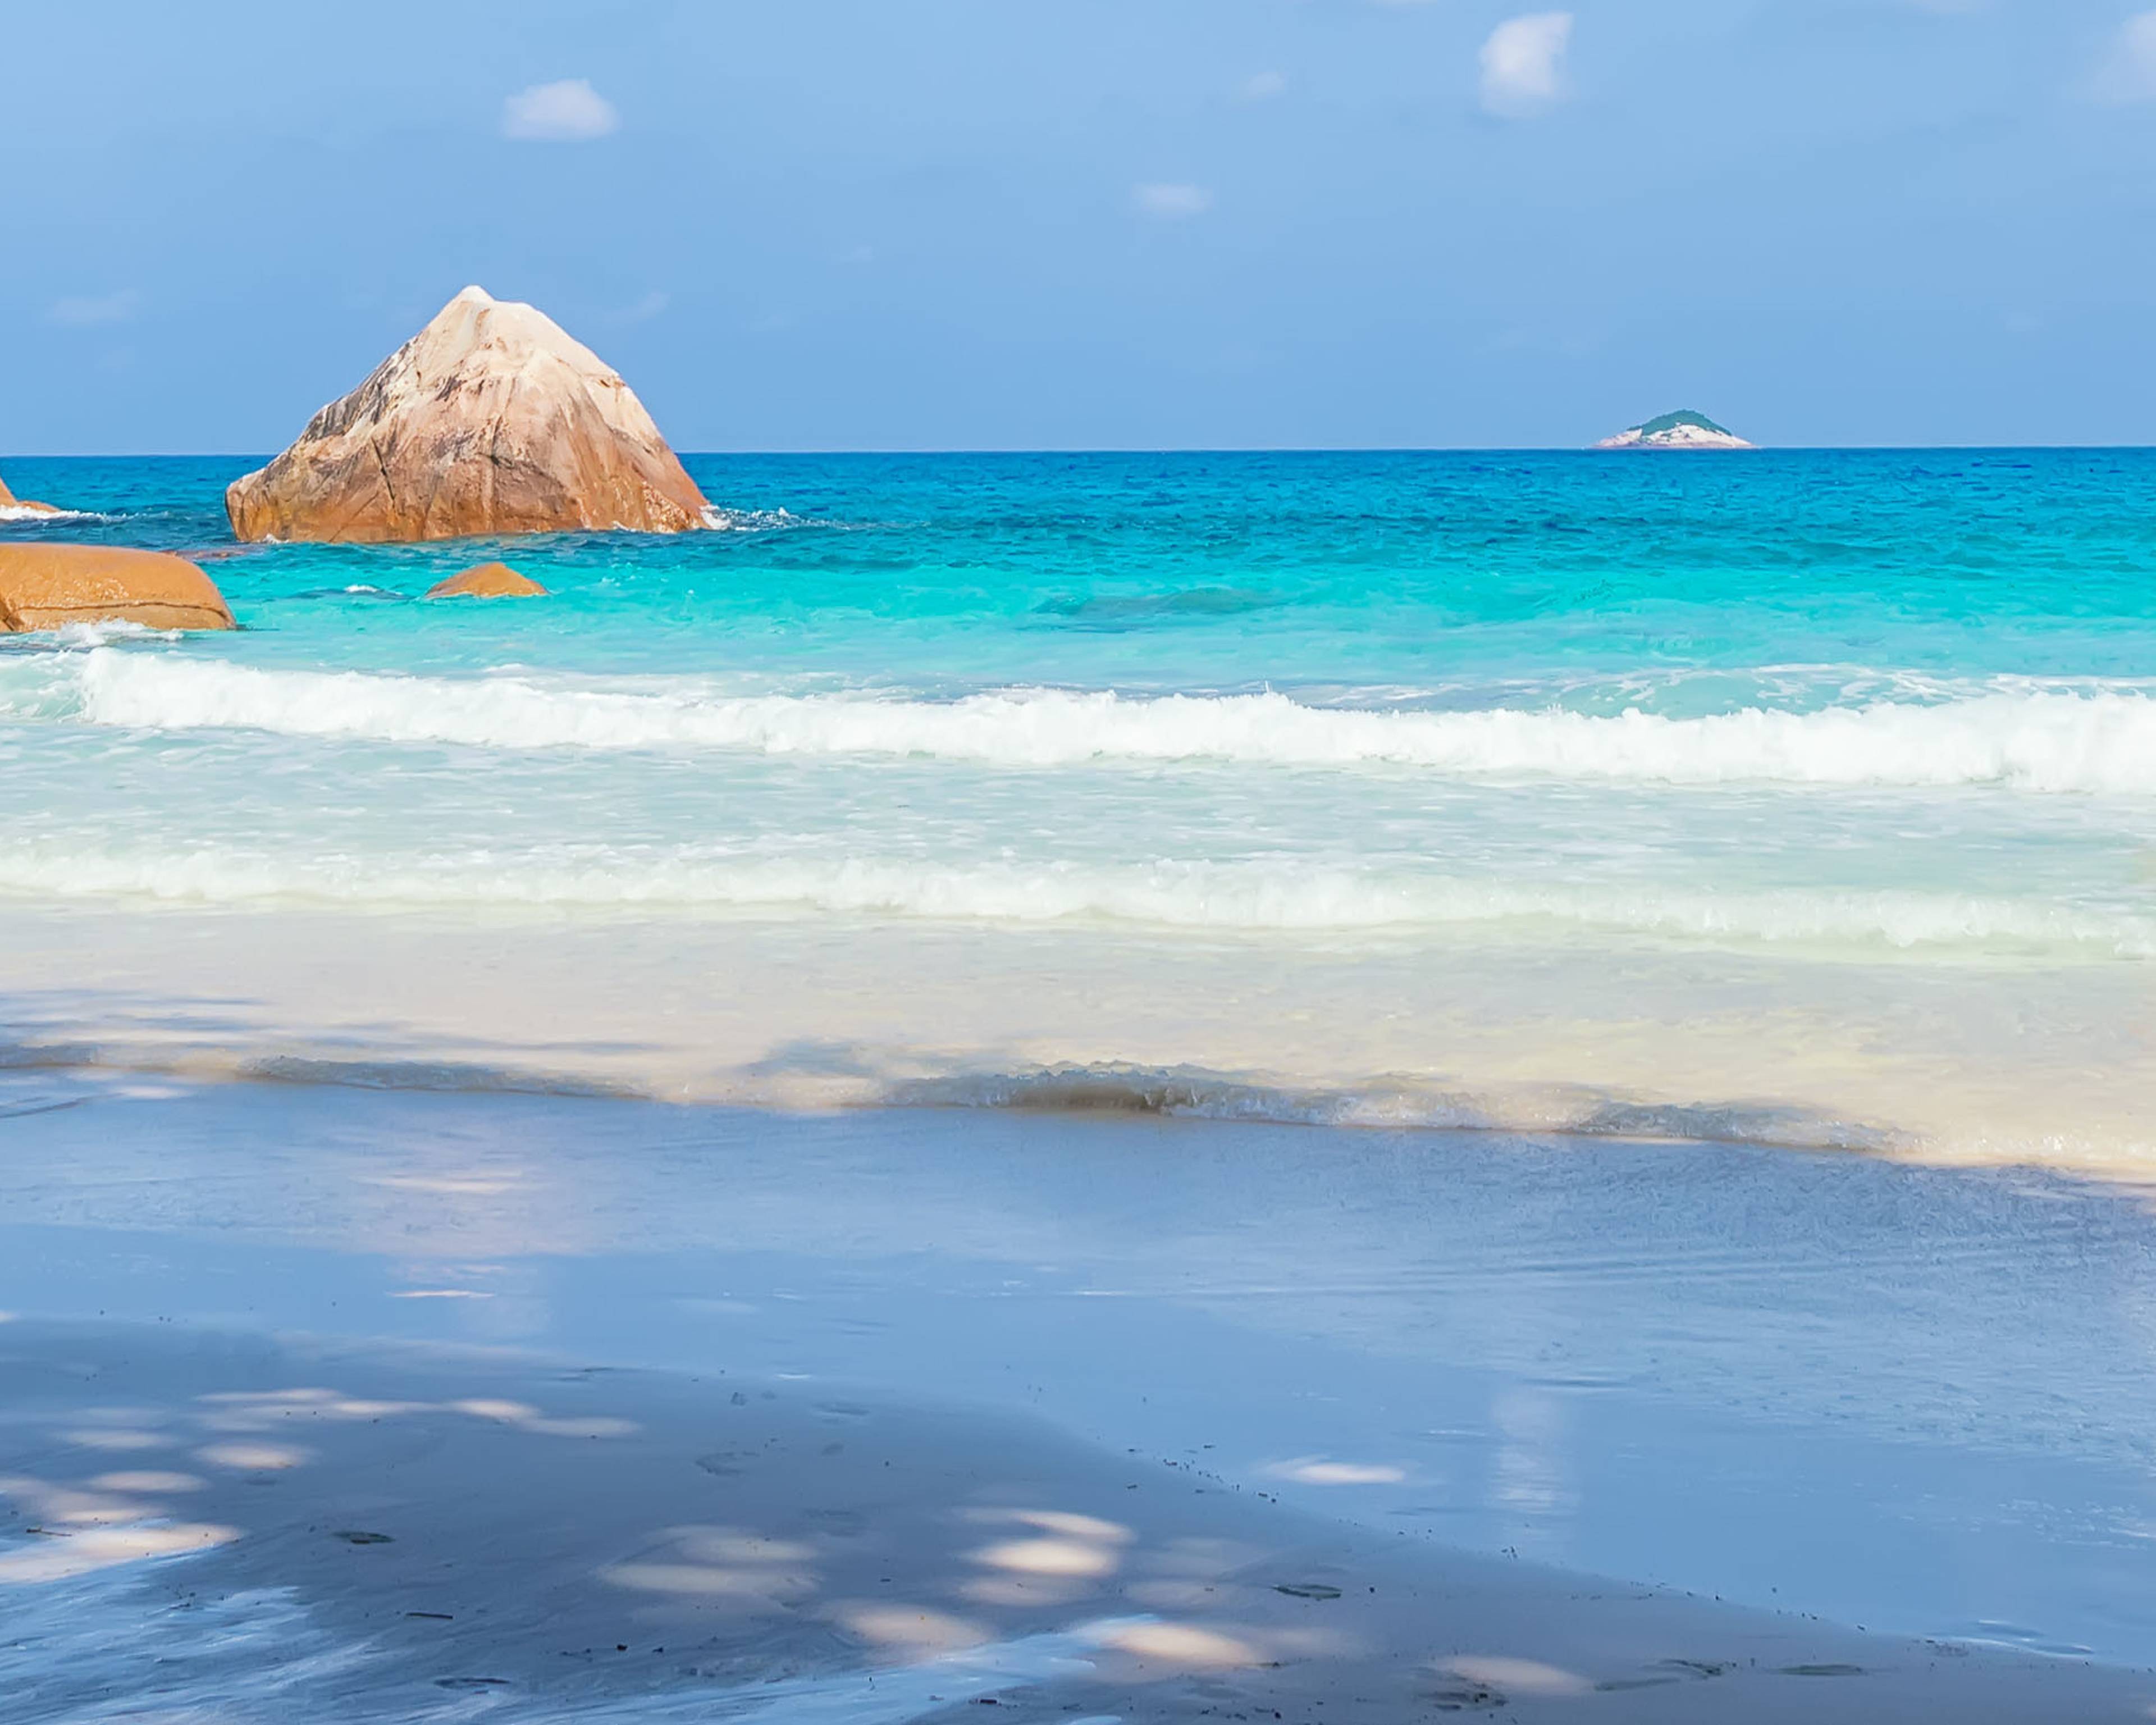 Crea il tuo viaggio alle Seychelles in estate, 100% su misura